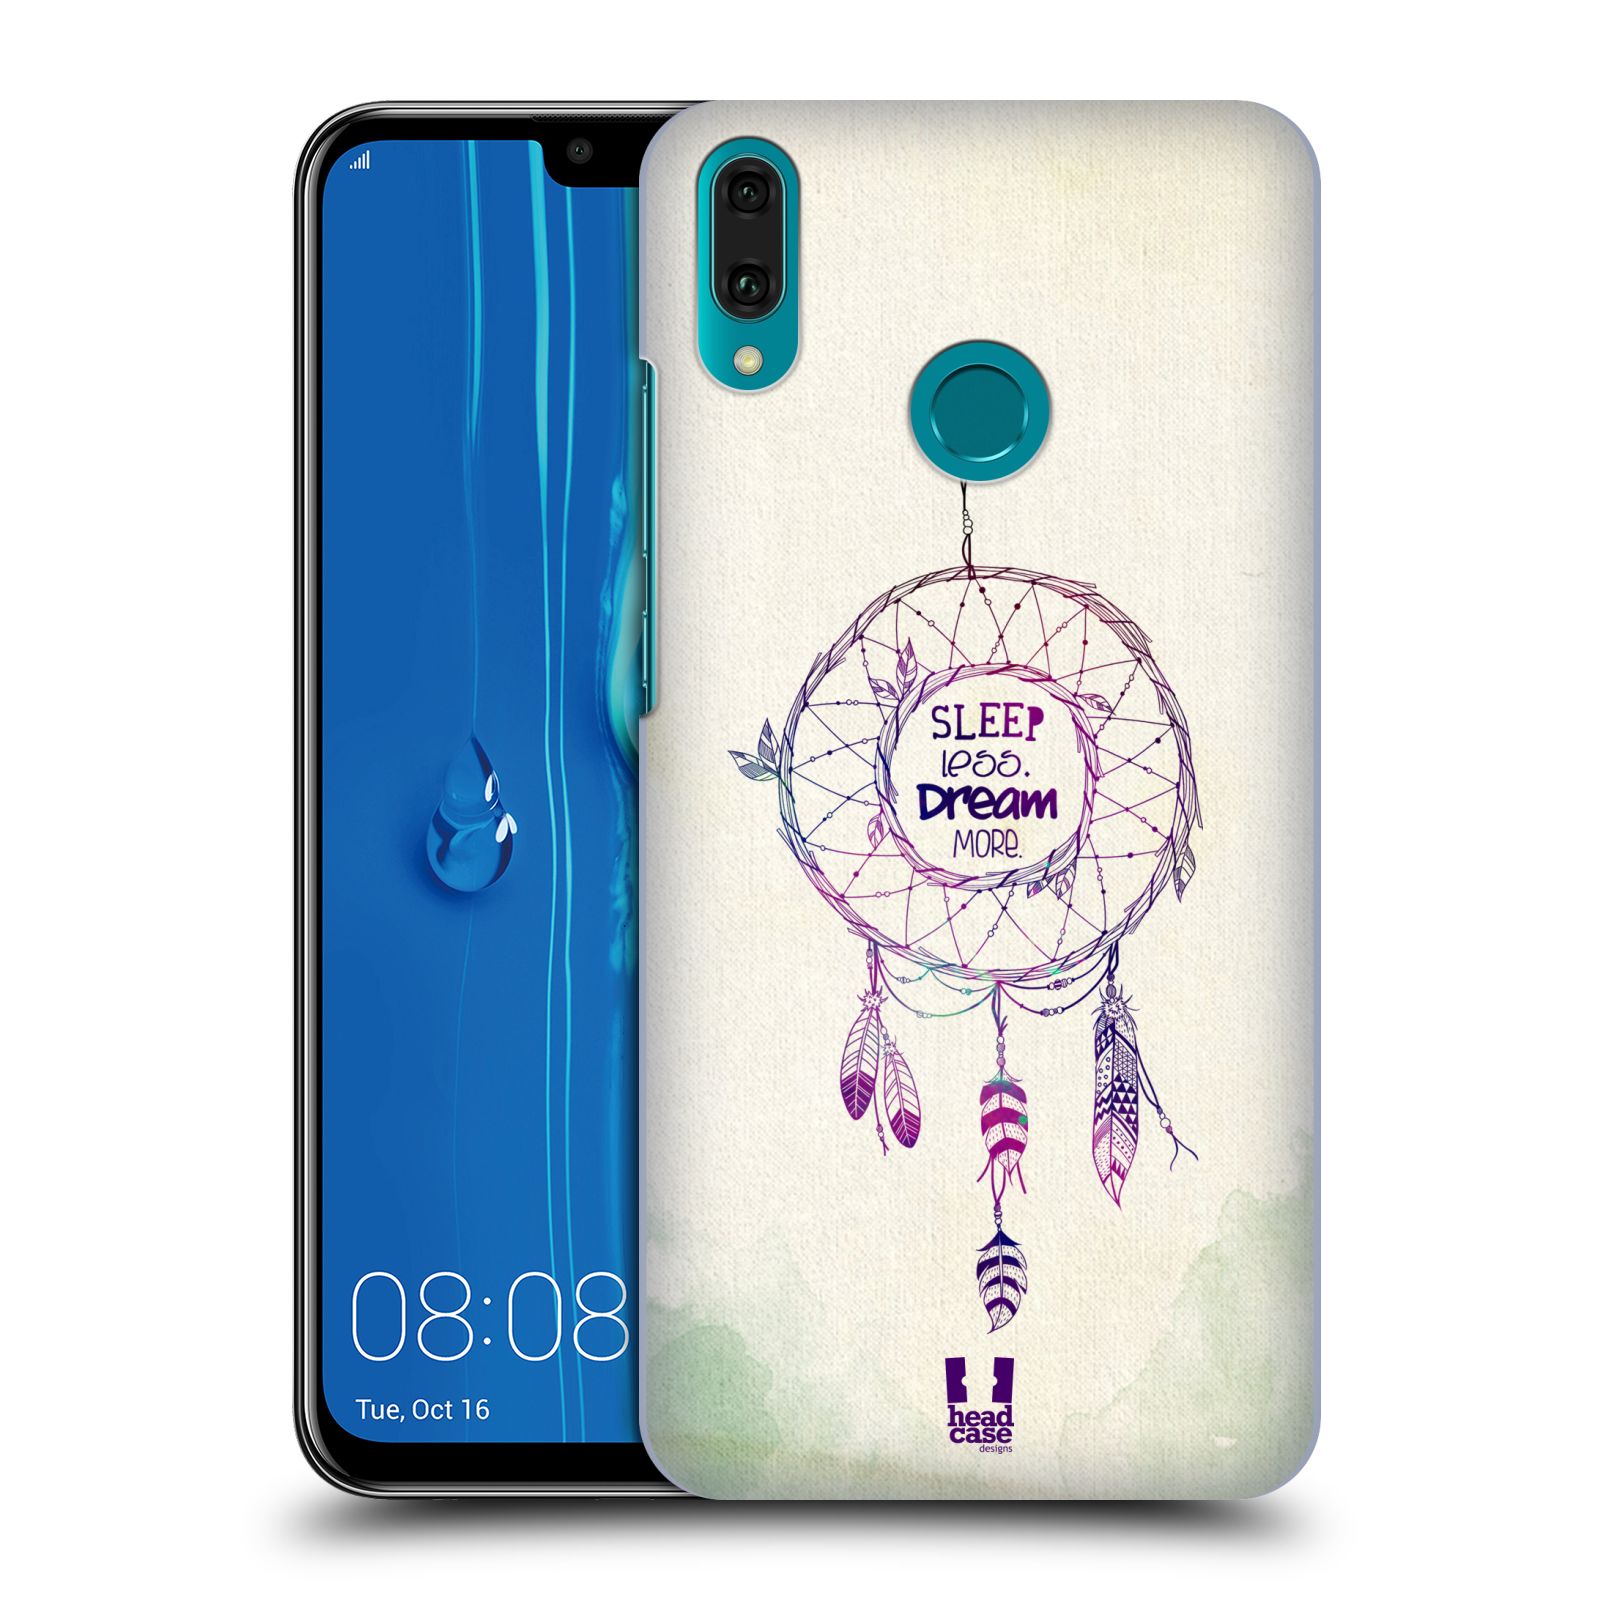 Pouzdro na mobil Huawei Y9 2019 - HEAD CASE - vzor Lapač snů ZELENÁ A FIALOVÁ